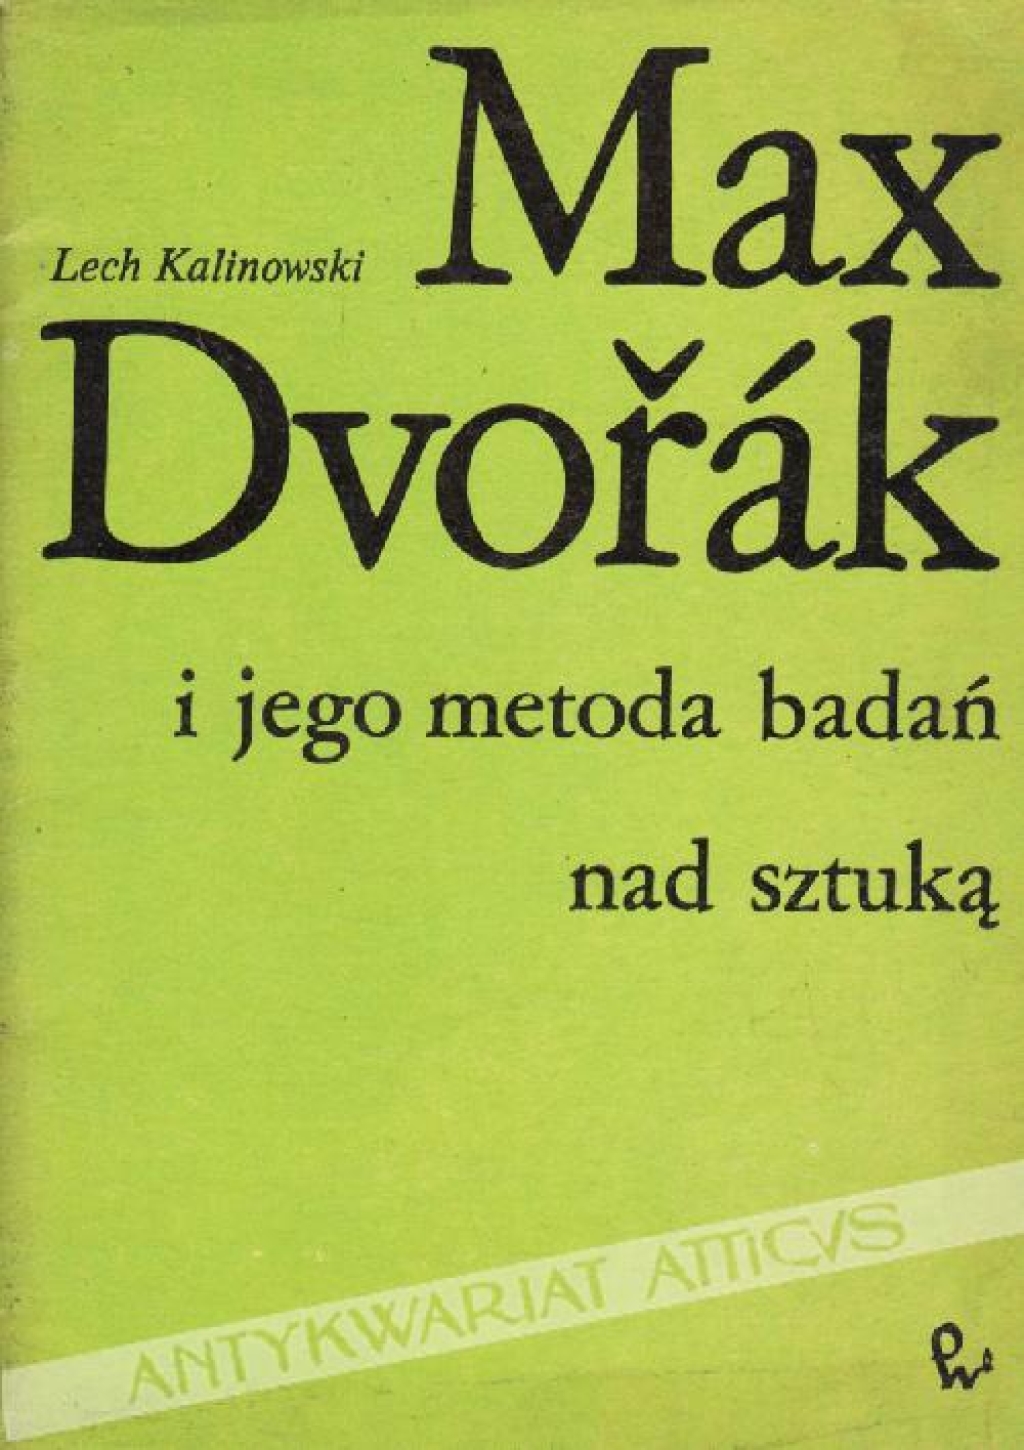 Max Dvorak i jego metoda badań nad sztuką